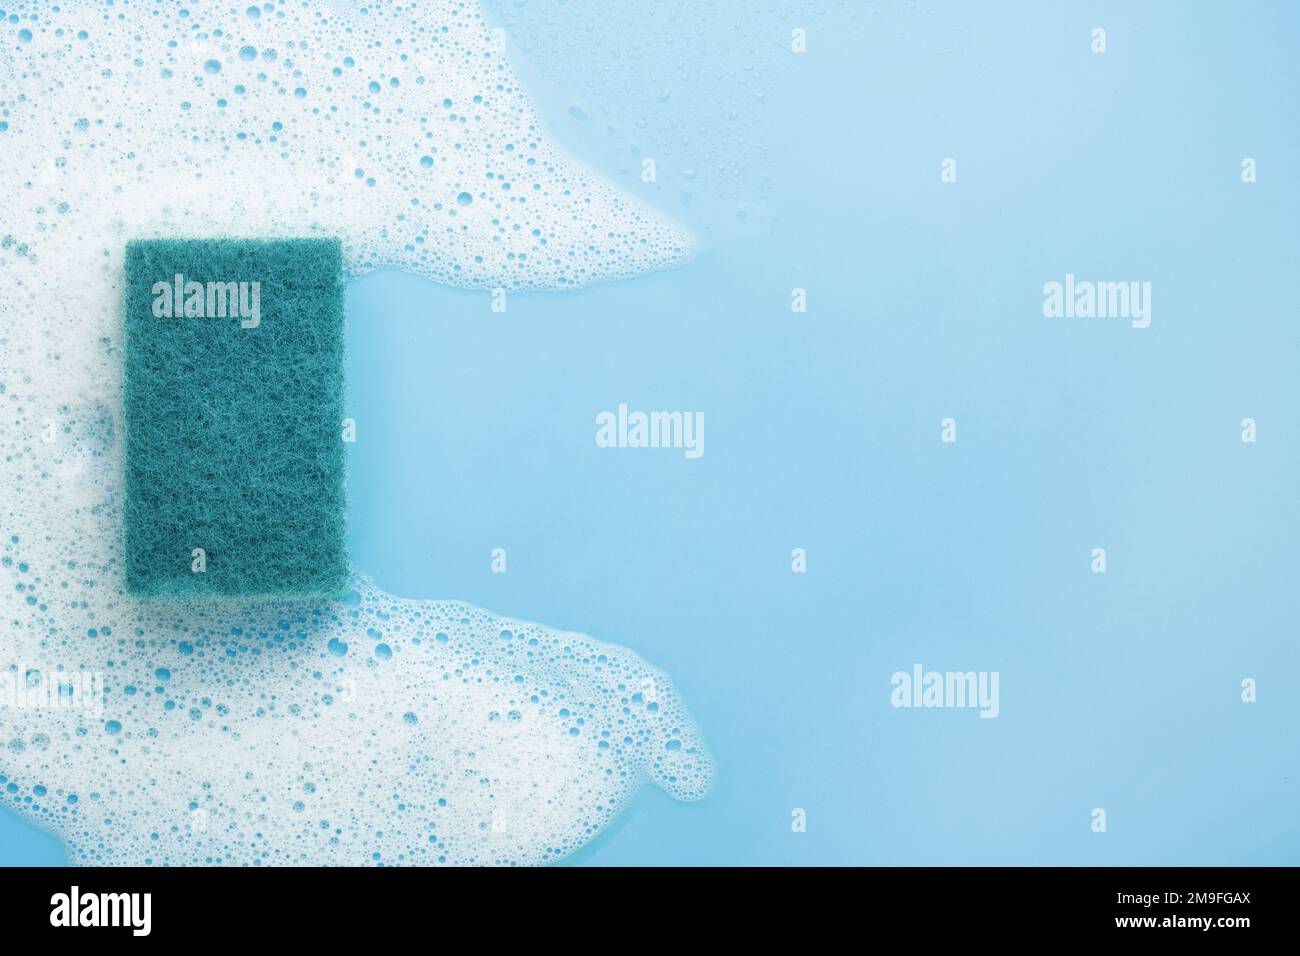 Una spugna di pulizia in schiuma bianca, mousse, su sfondo blu. Cornice per il testo. Il concetto di agenti schiumogeni, detergenti o detergenti. Foto Stock